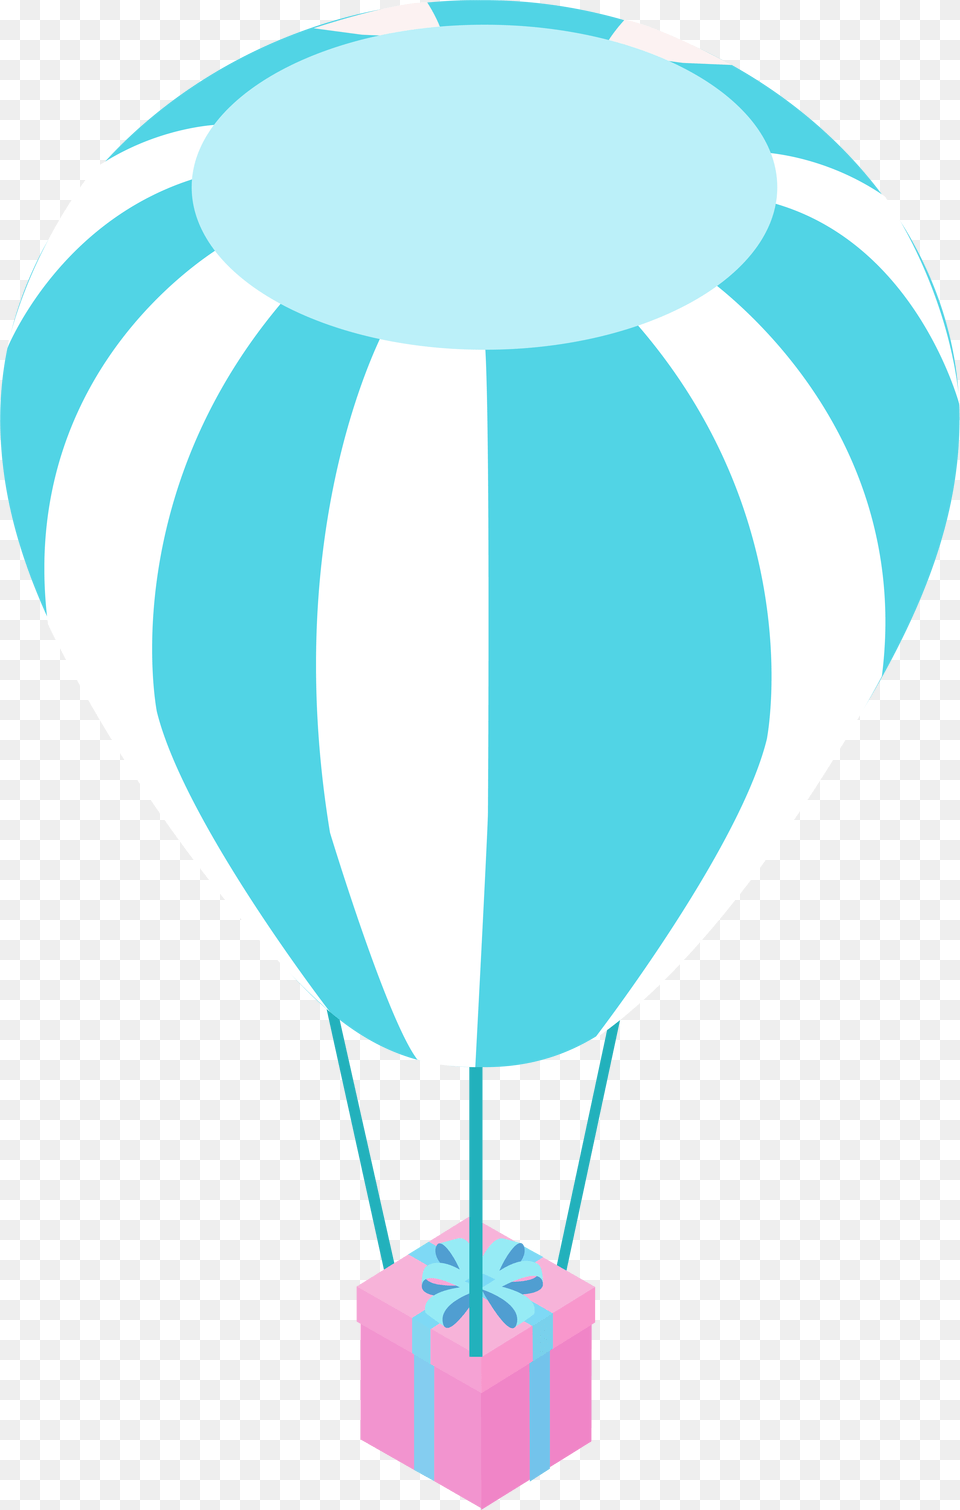 Balloon Vector, Aircraft, Hot Air Balloon, Transportation, Vehicle Free Transparent Png